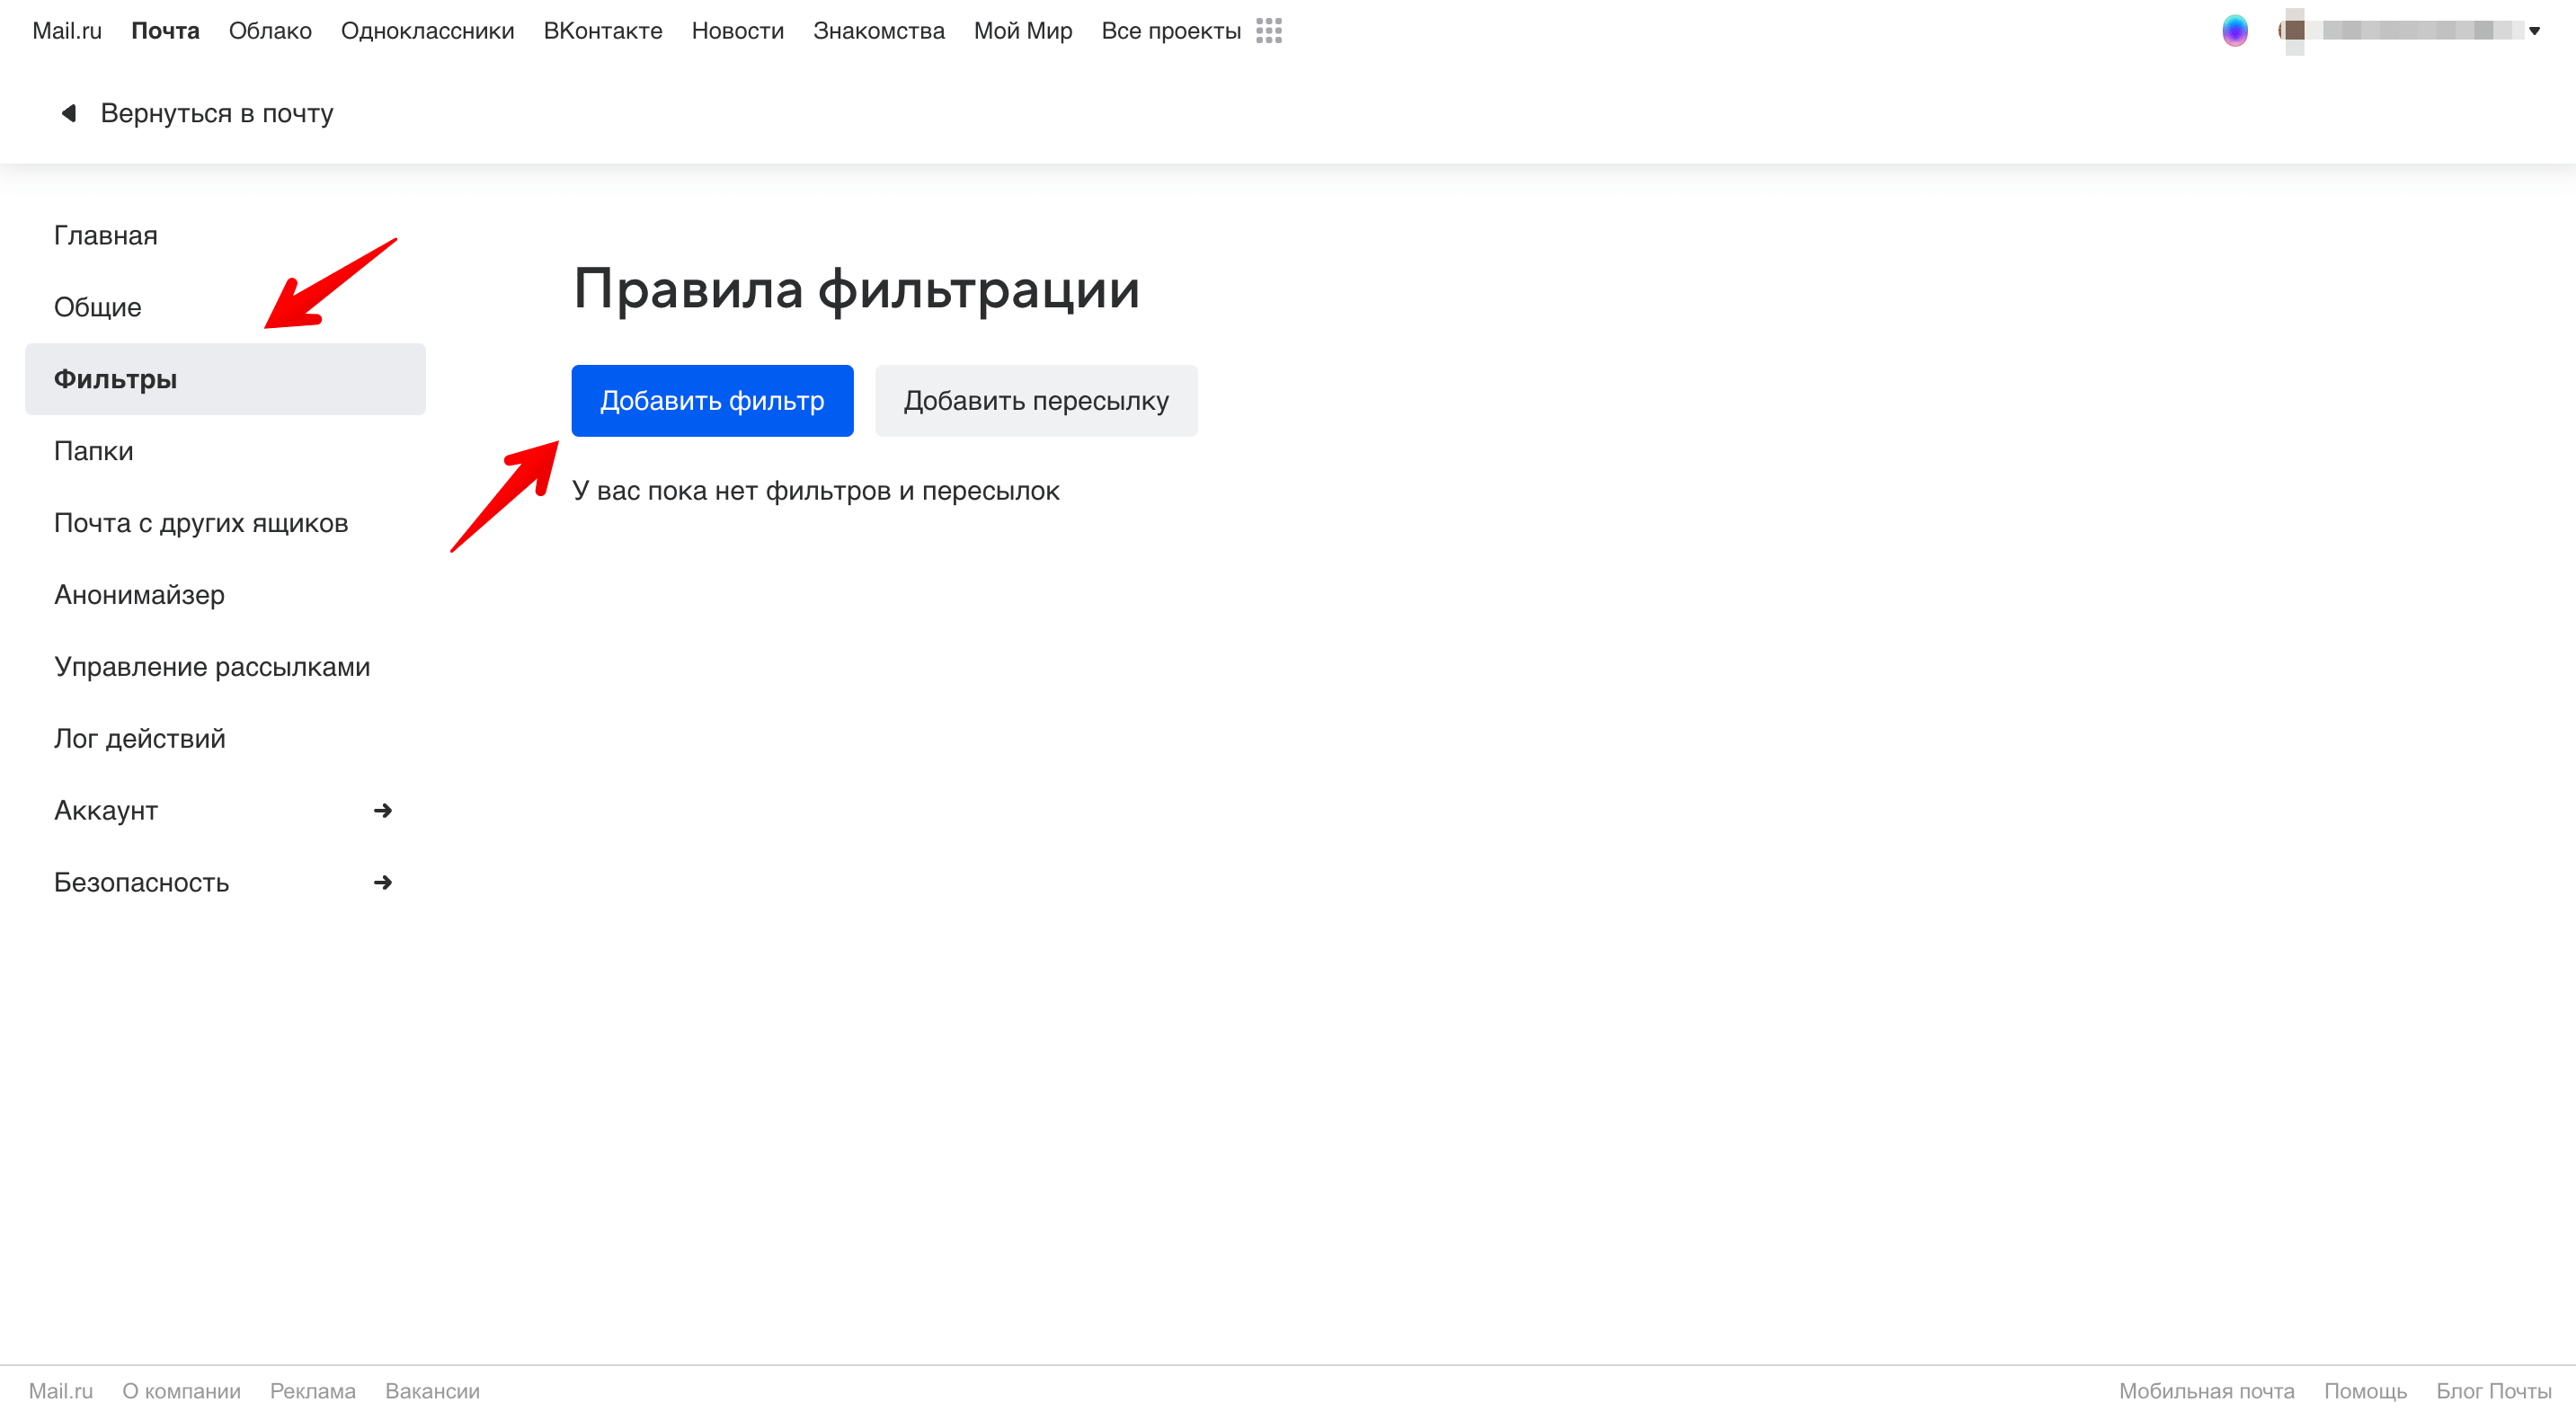 Mail.ru - создание фильтра.png